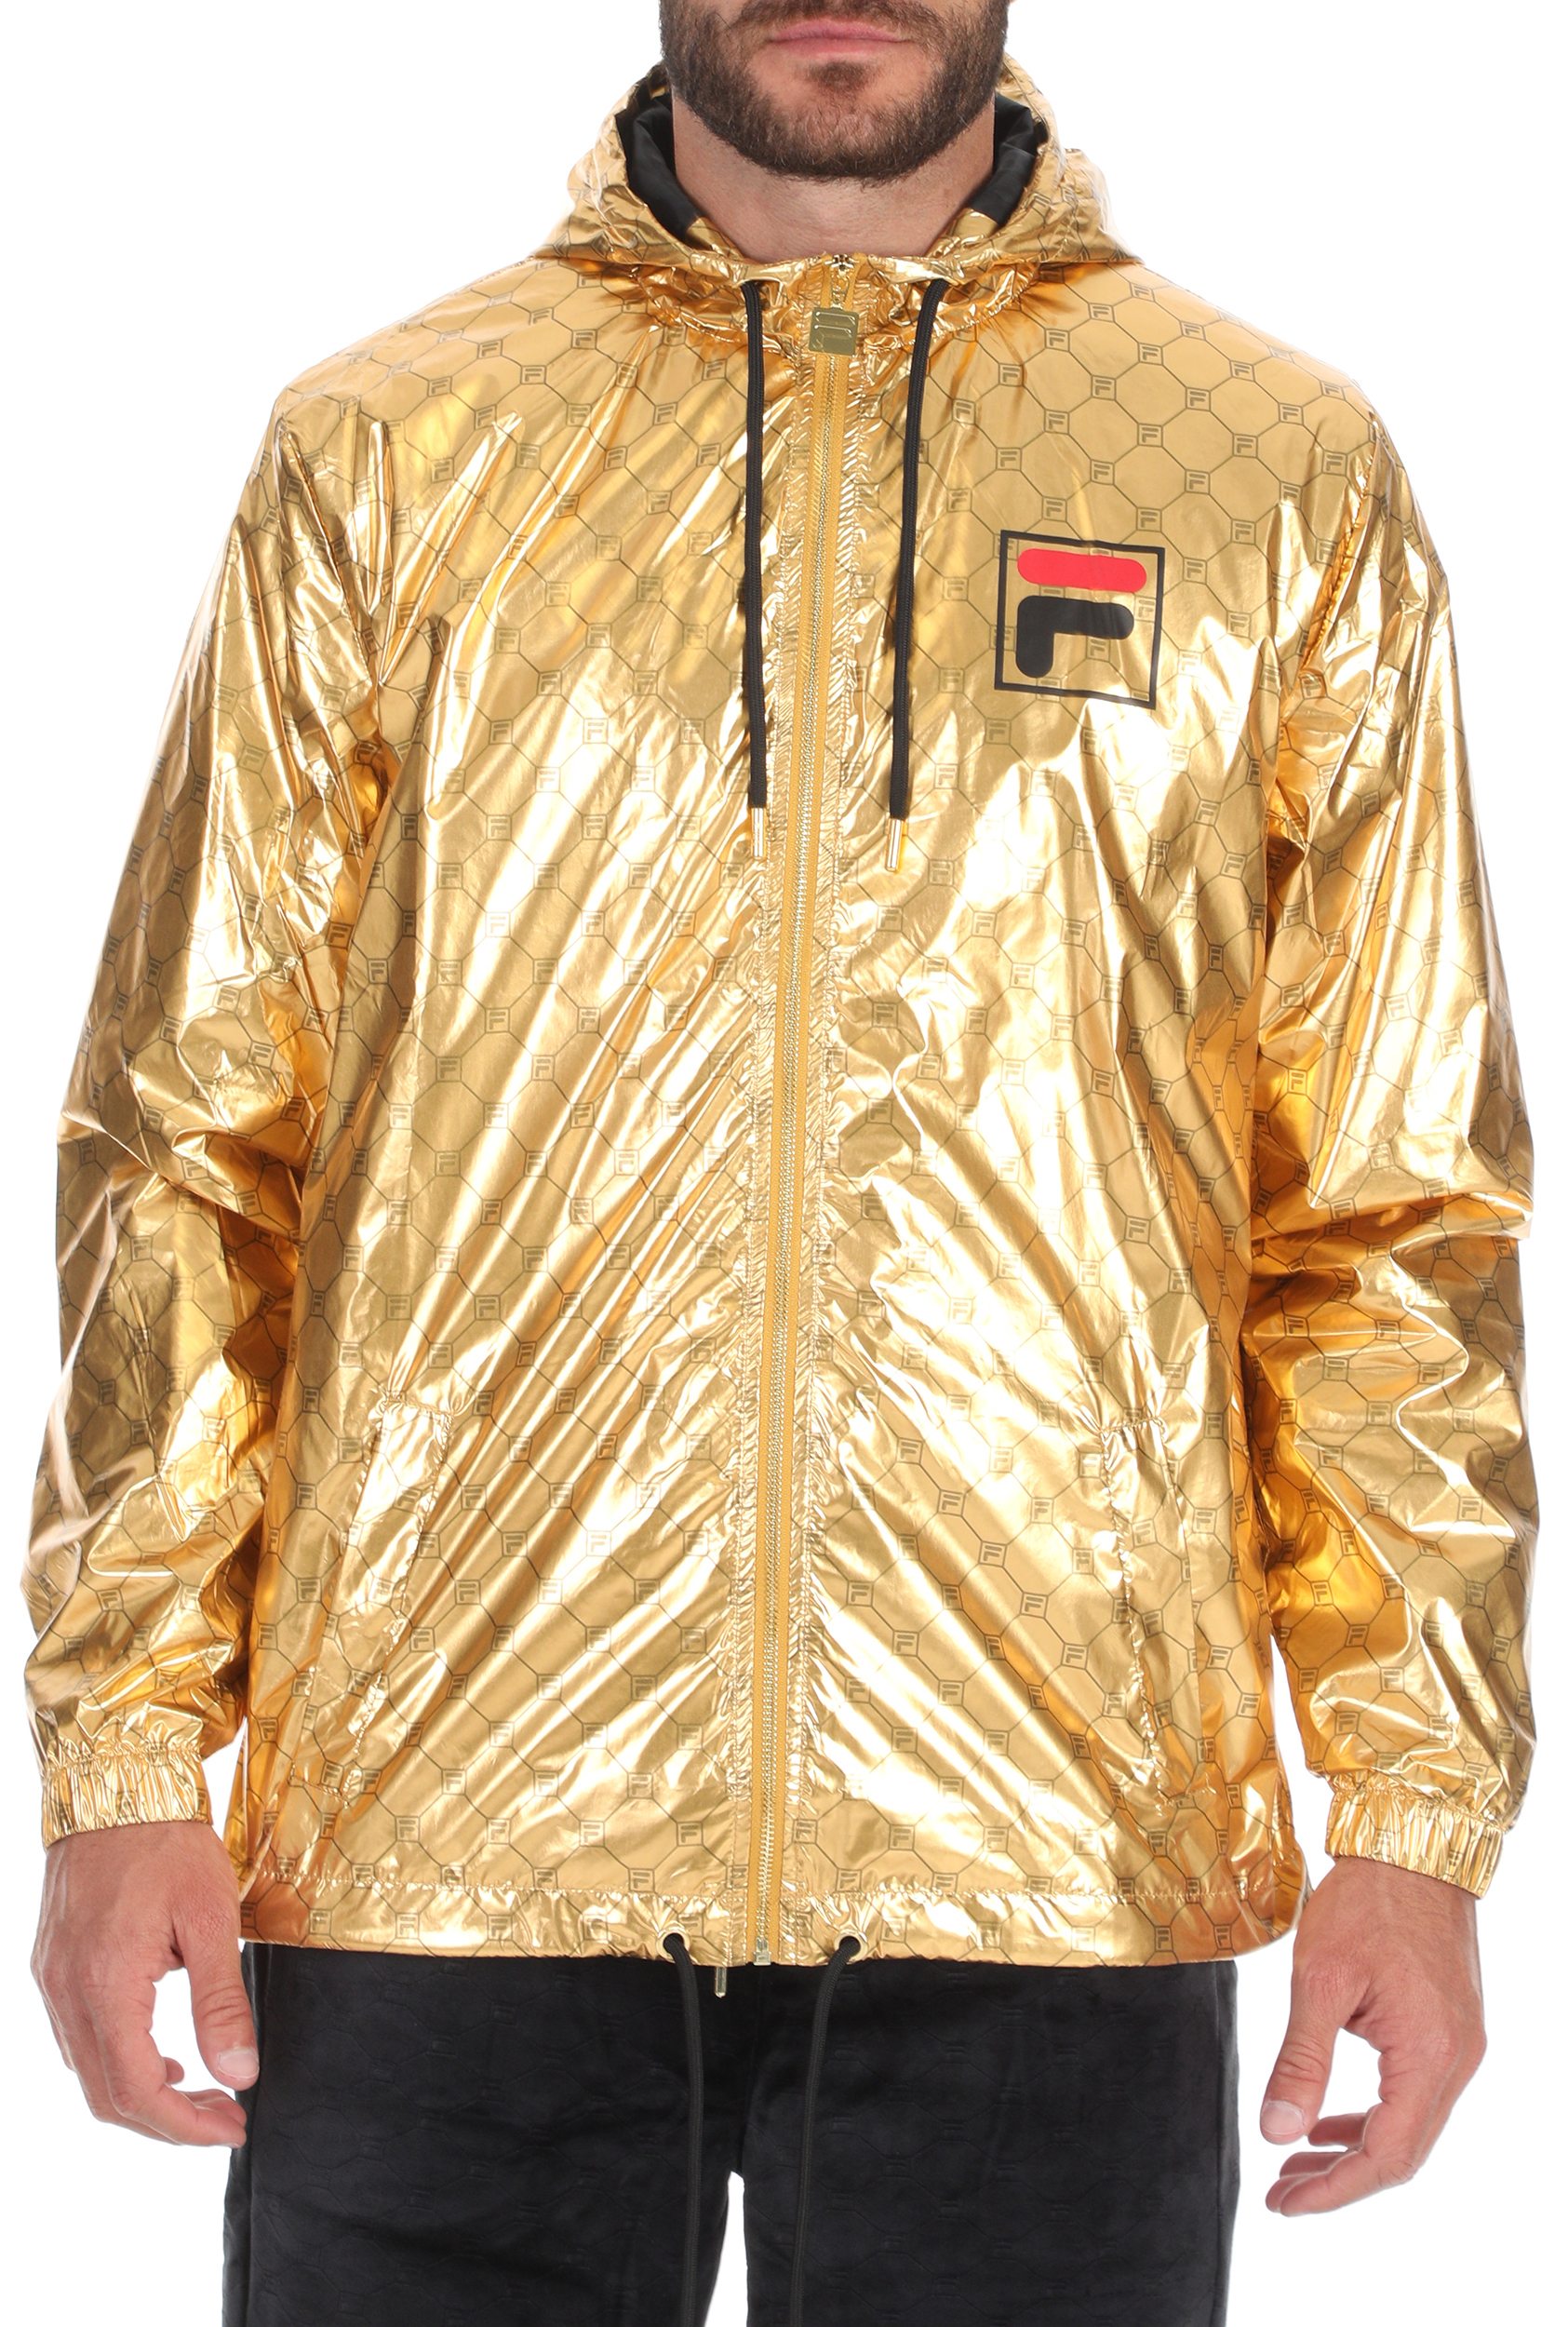 Ανδρικά/Ρούχα/Πανωφόρια/Τζάκετς FILA - Ανδρικό αντιανέμικό jacket FILA GUSTAS χρυσό